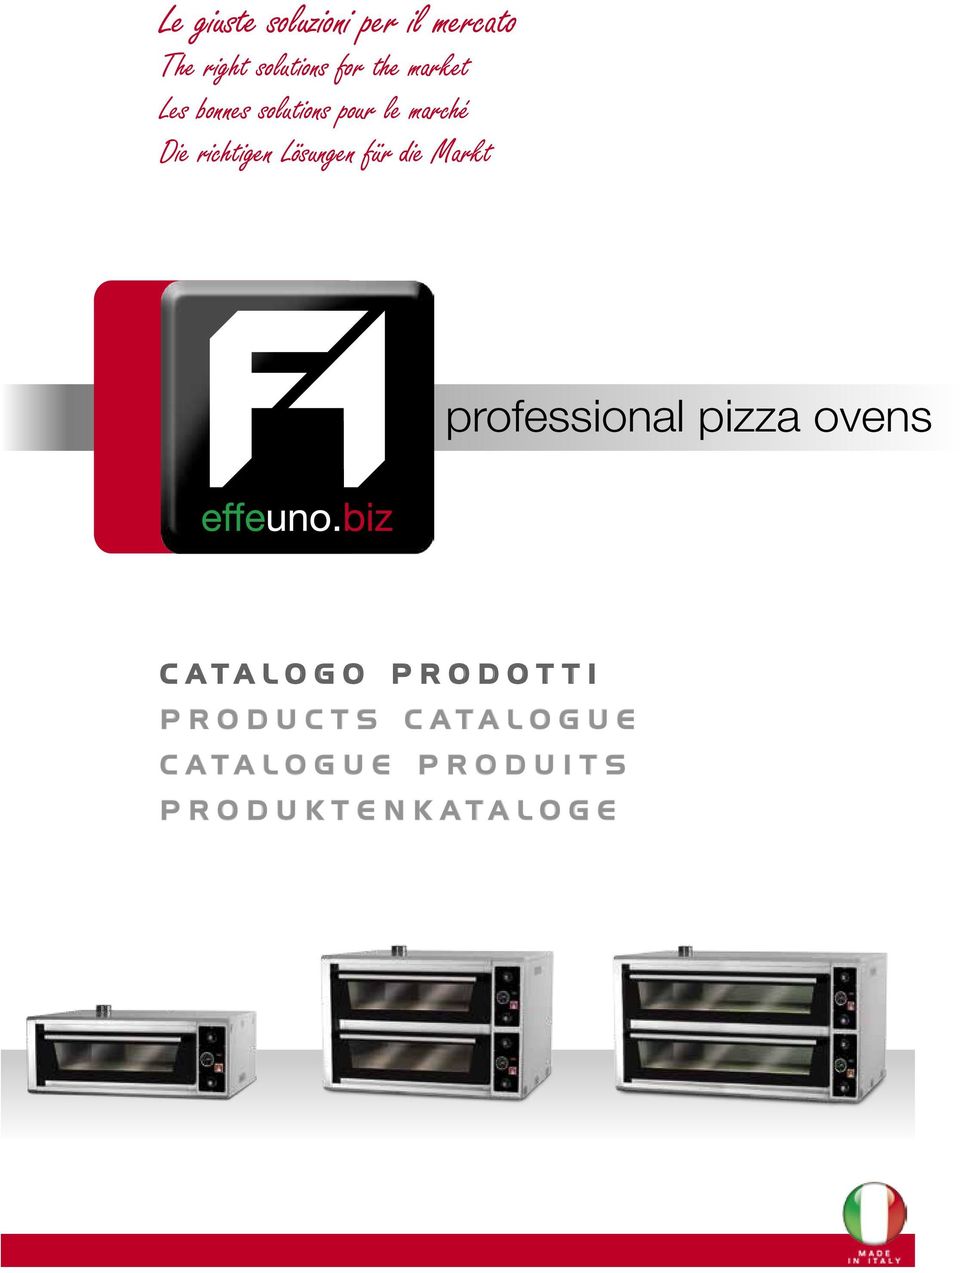 Lösungen für die Markt professional pizza ovens CATALOGO